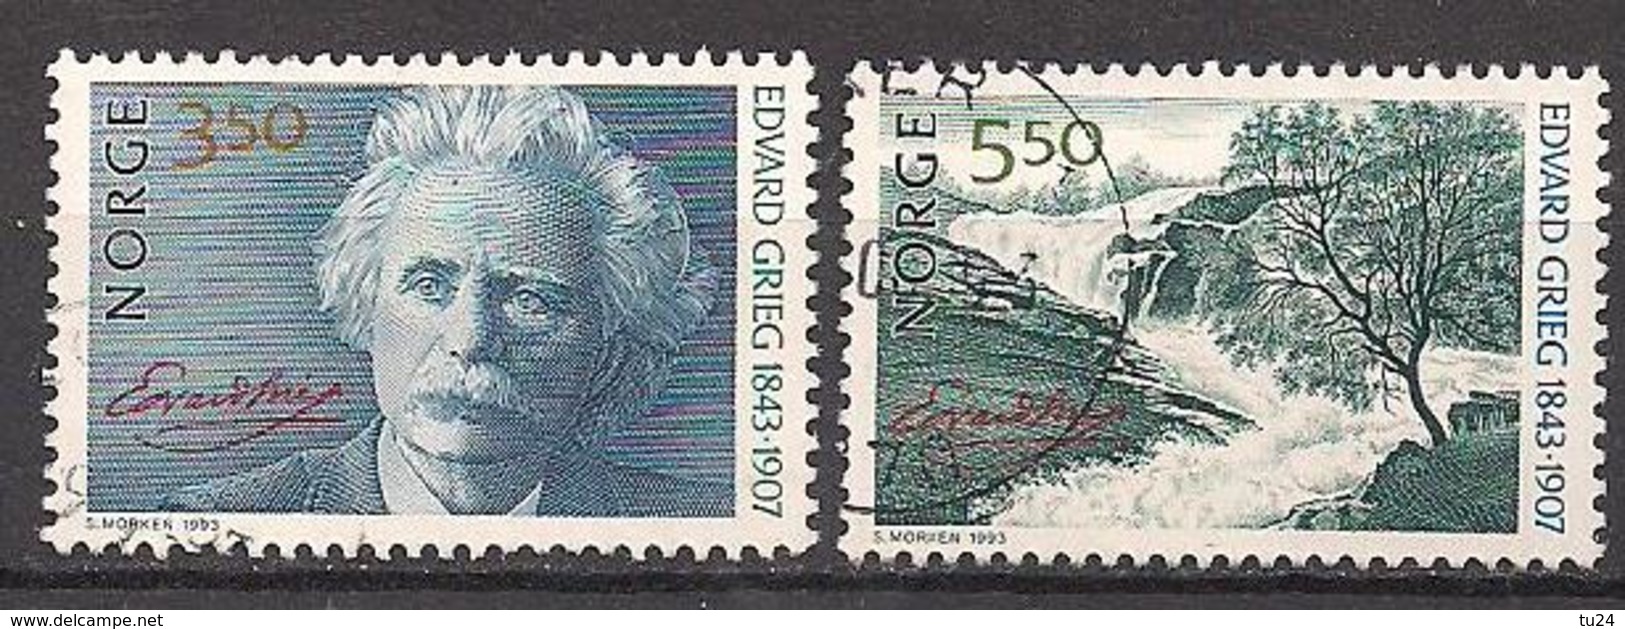 Norwegen  (1993)  Mi.Nr.  1125 + 1126  Gest. / Used  (4ff01) - Used Stamps